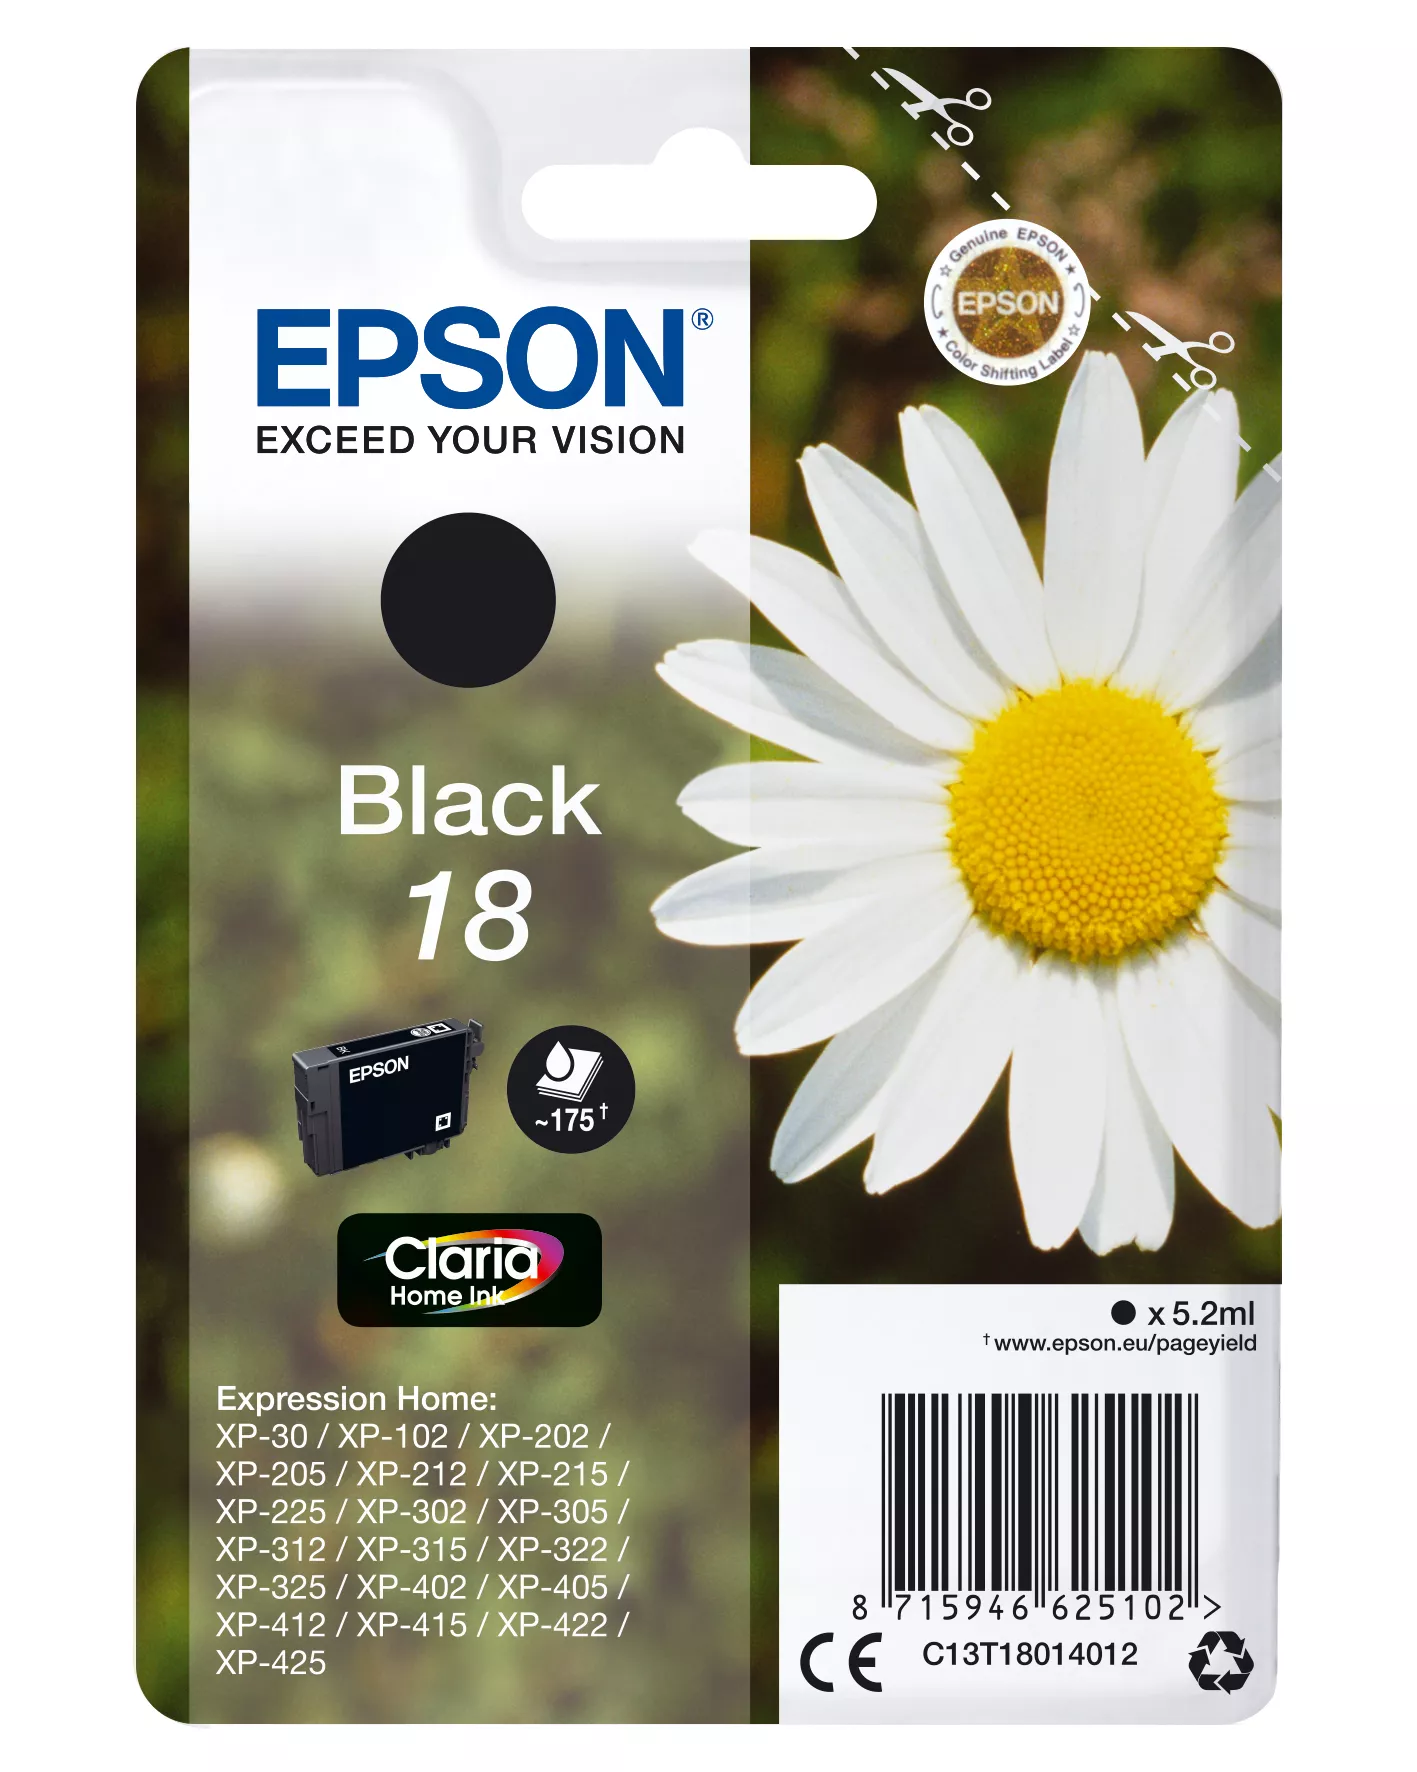 Achat EPSON 18 cartouche d encre noir capacité standard 5.2ml 175 sur hello RSE